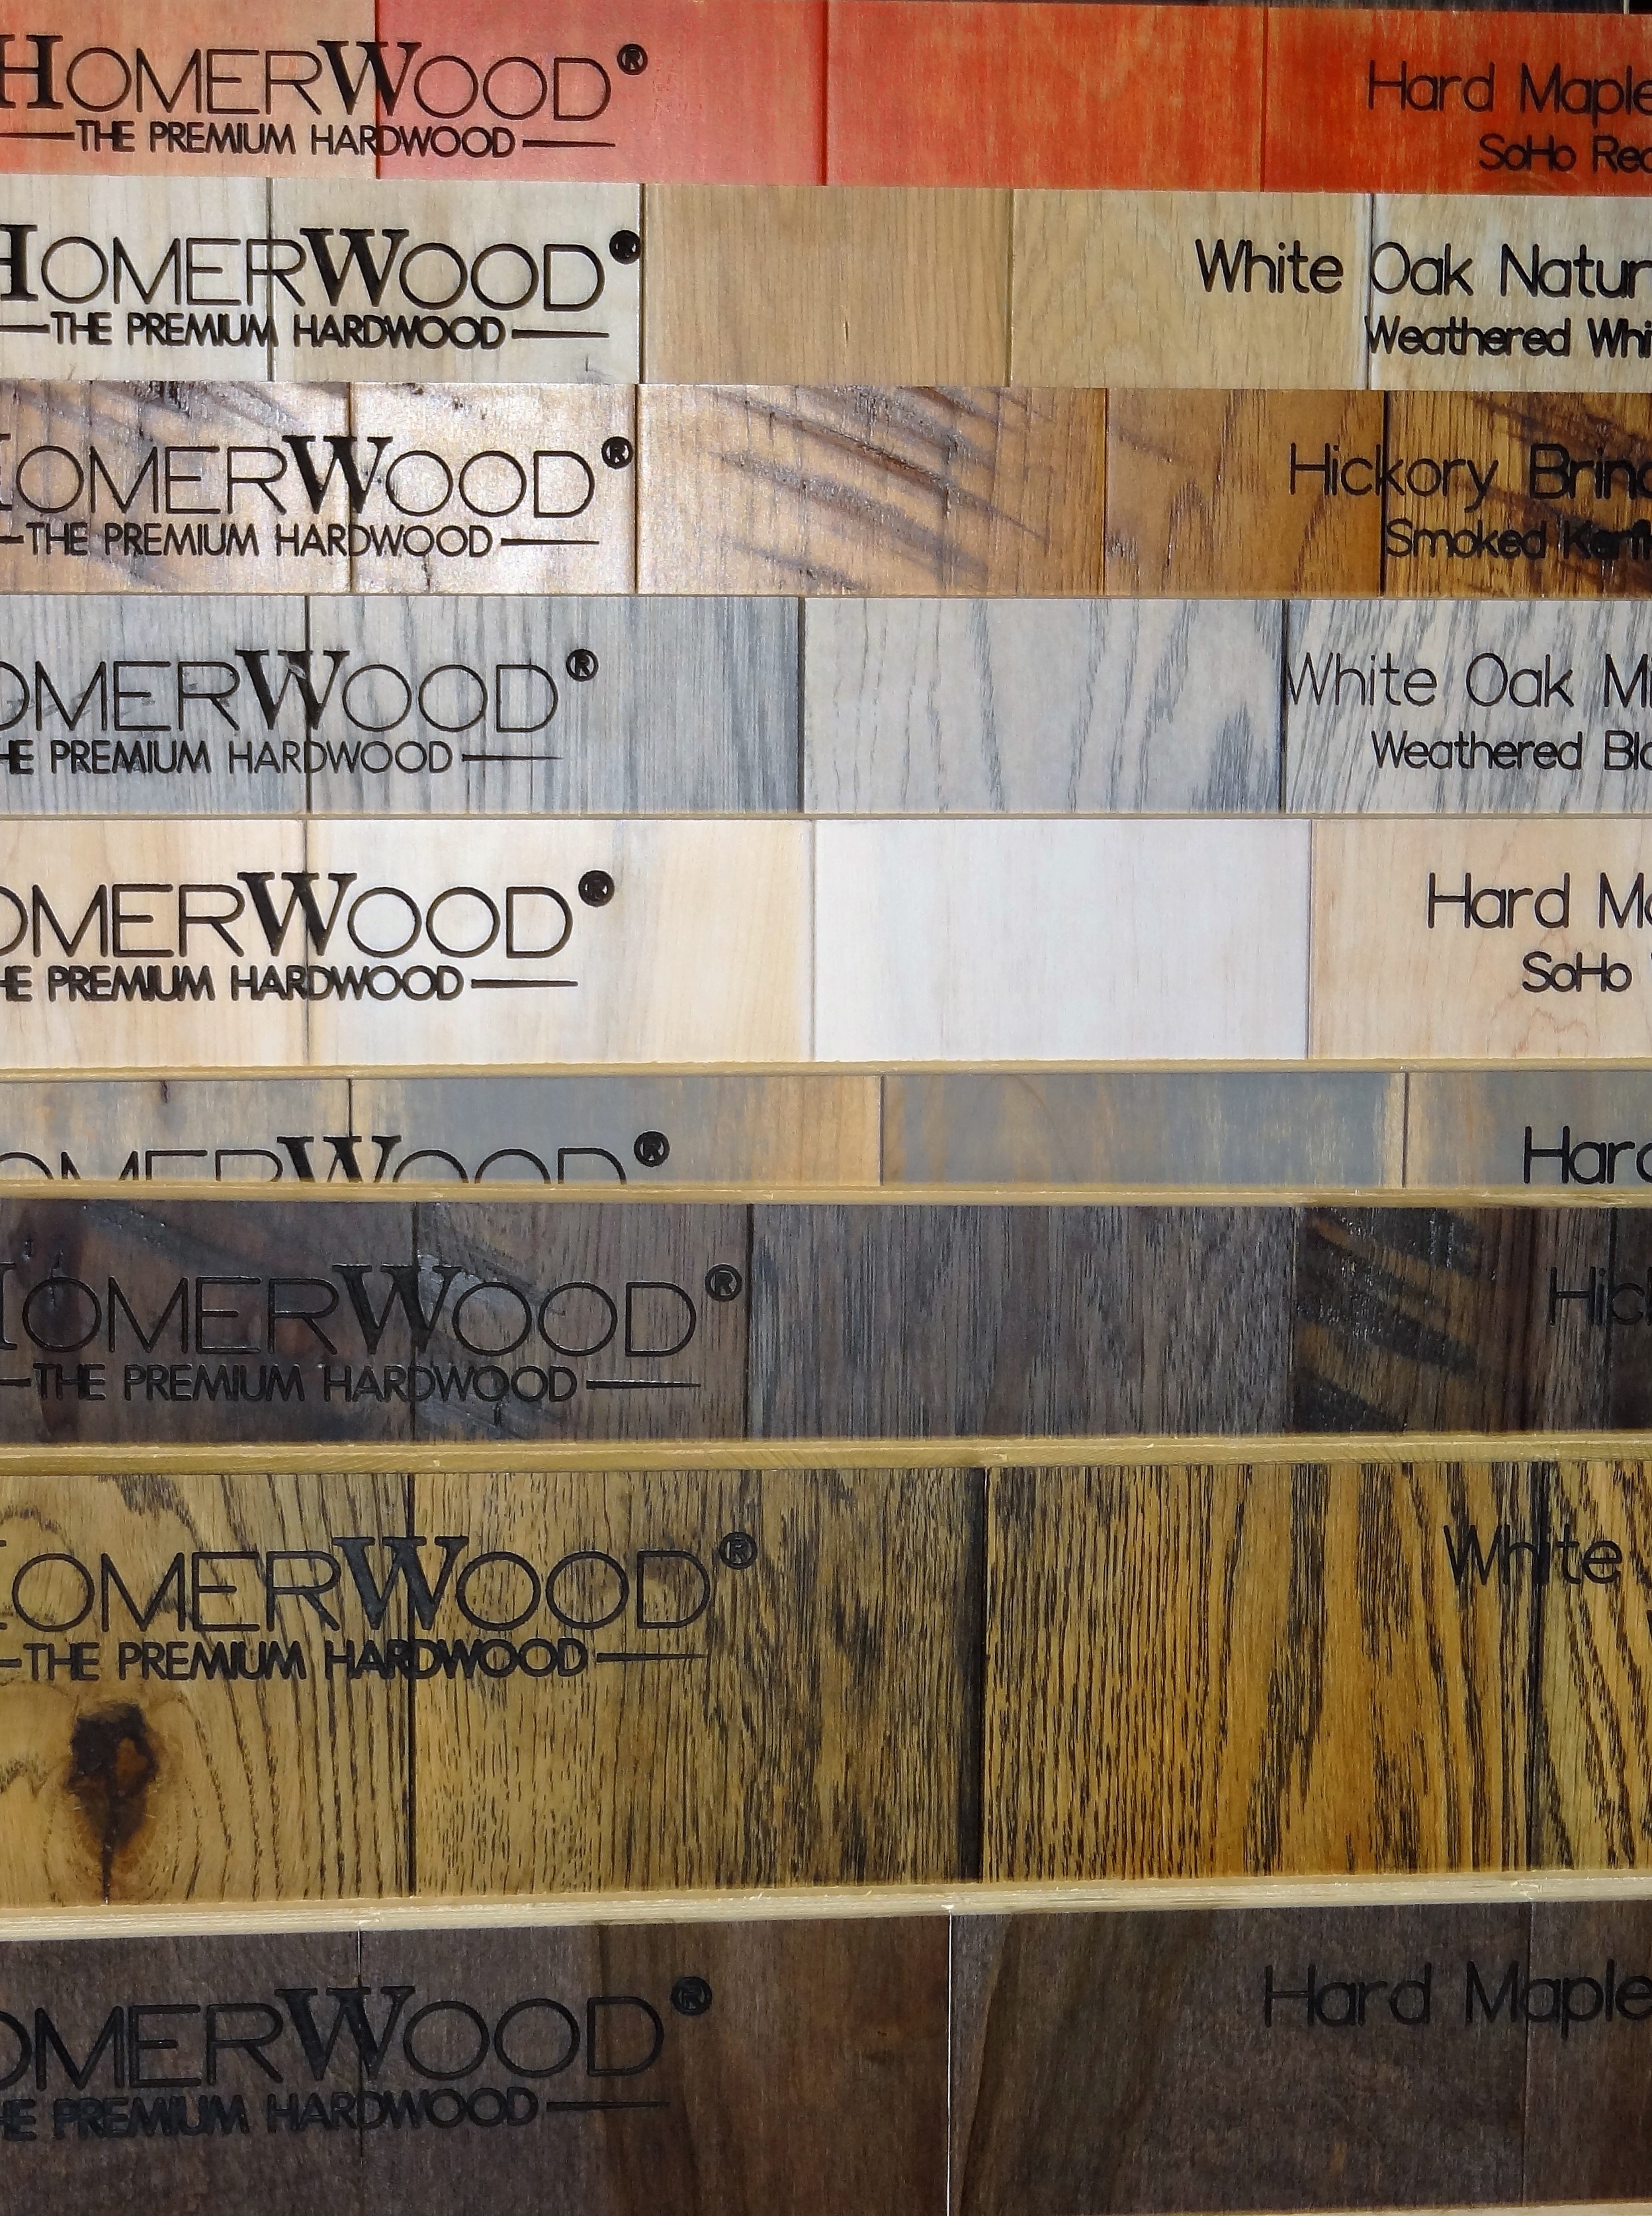 Homer Wood Display at Carpets and Floors Inc.